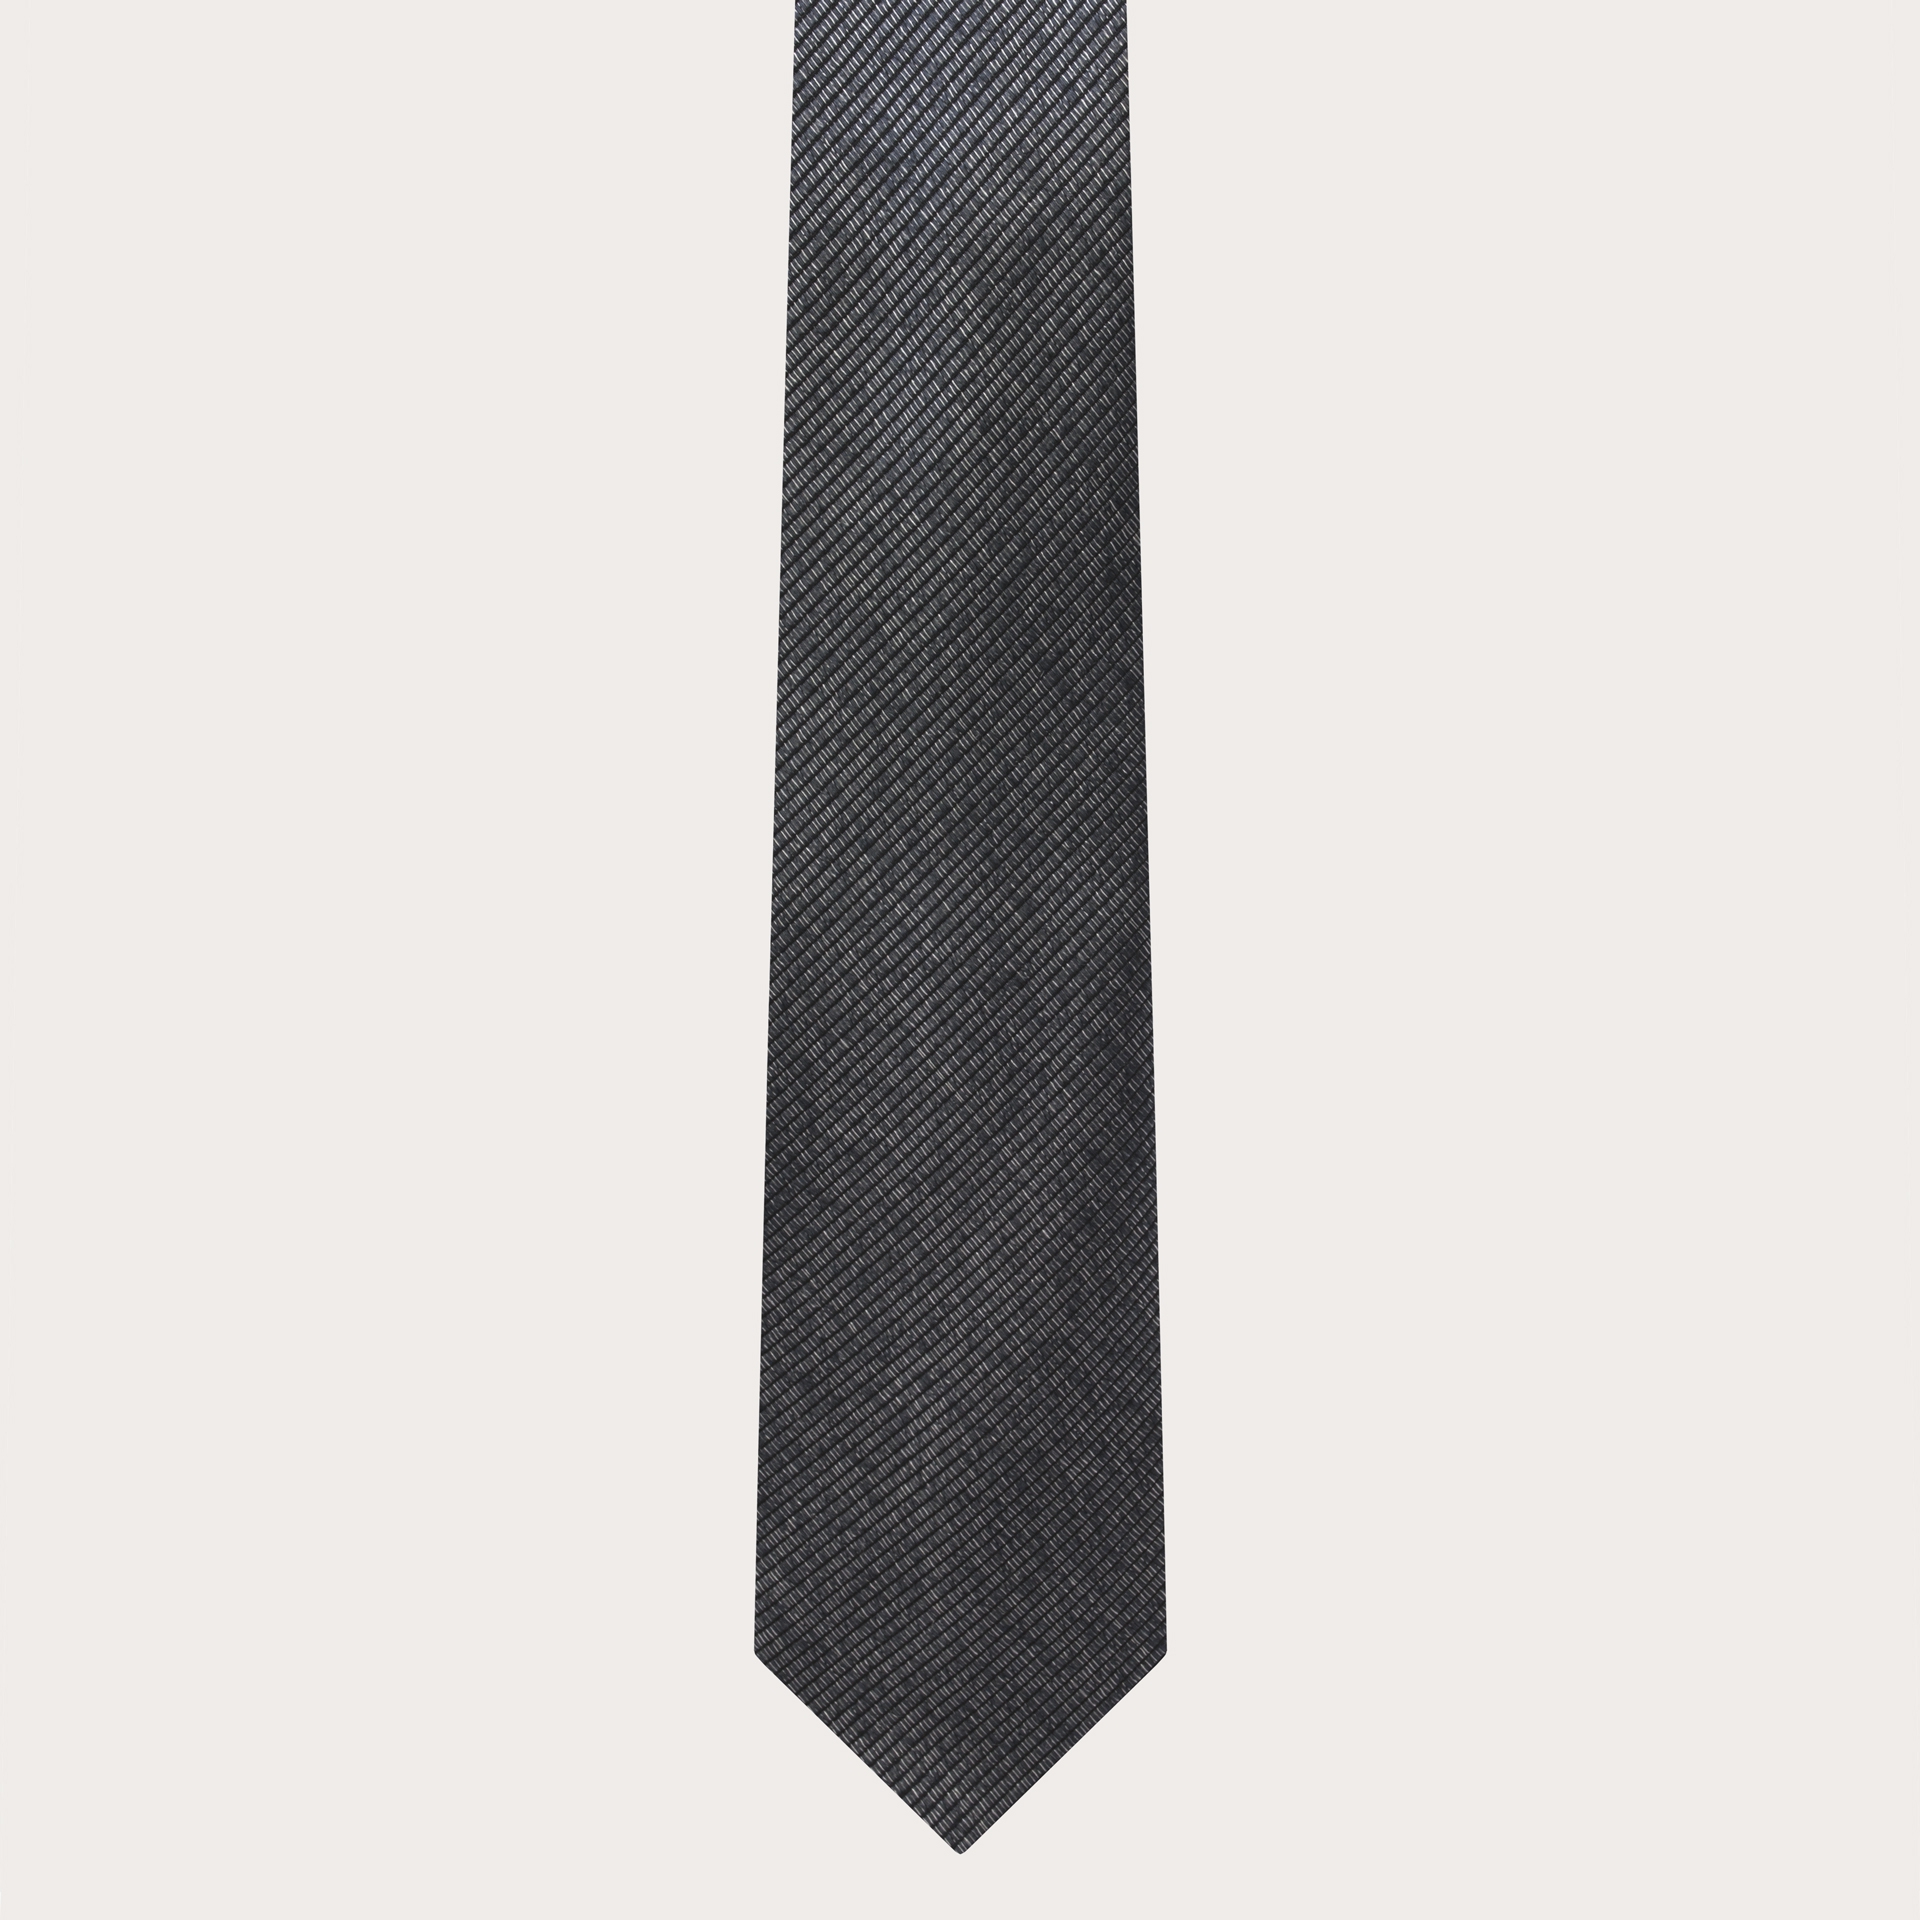 BRUCLE Cravate étroite pour homme en jacquard de soie chiné noir et argent